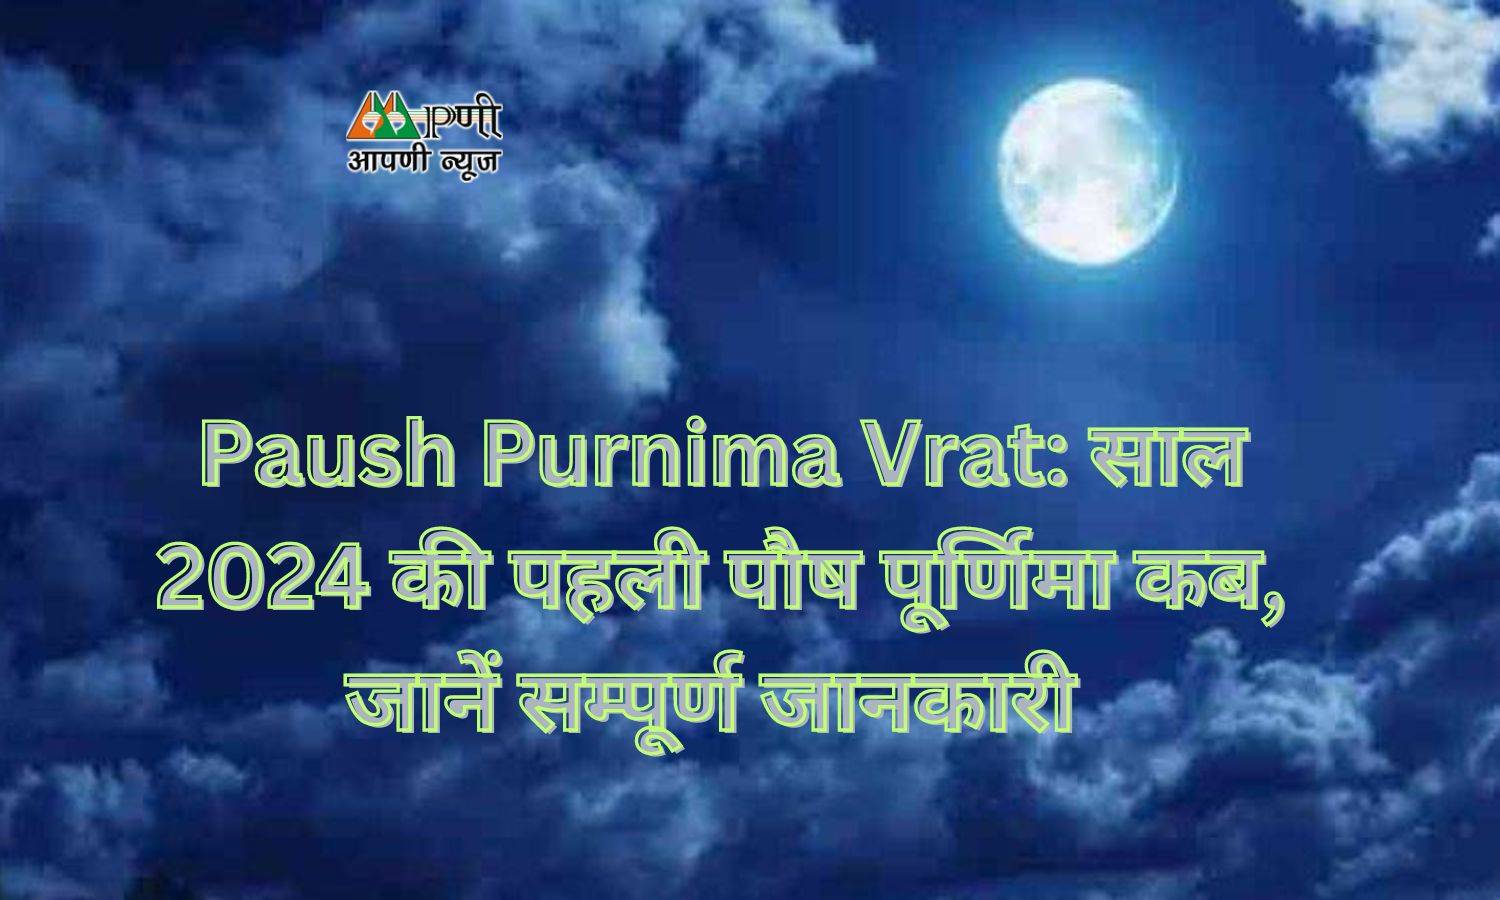 Paush Purnima Vrat: साल 2024 की पहली पौष पूर्णिमा कब, जानें सम्पूर्ण जानकारी